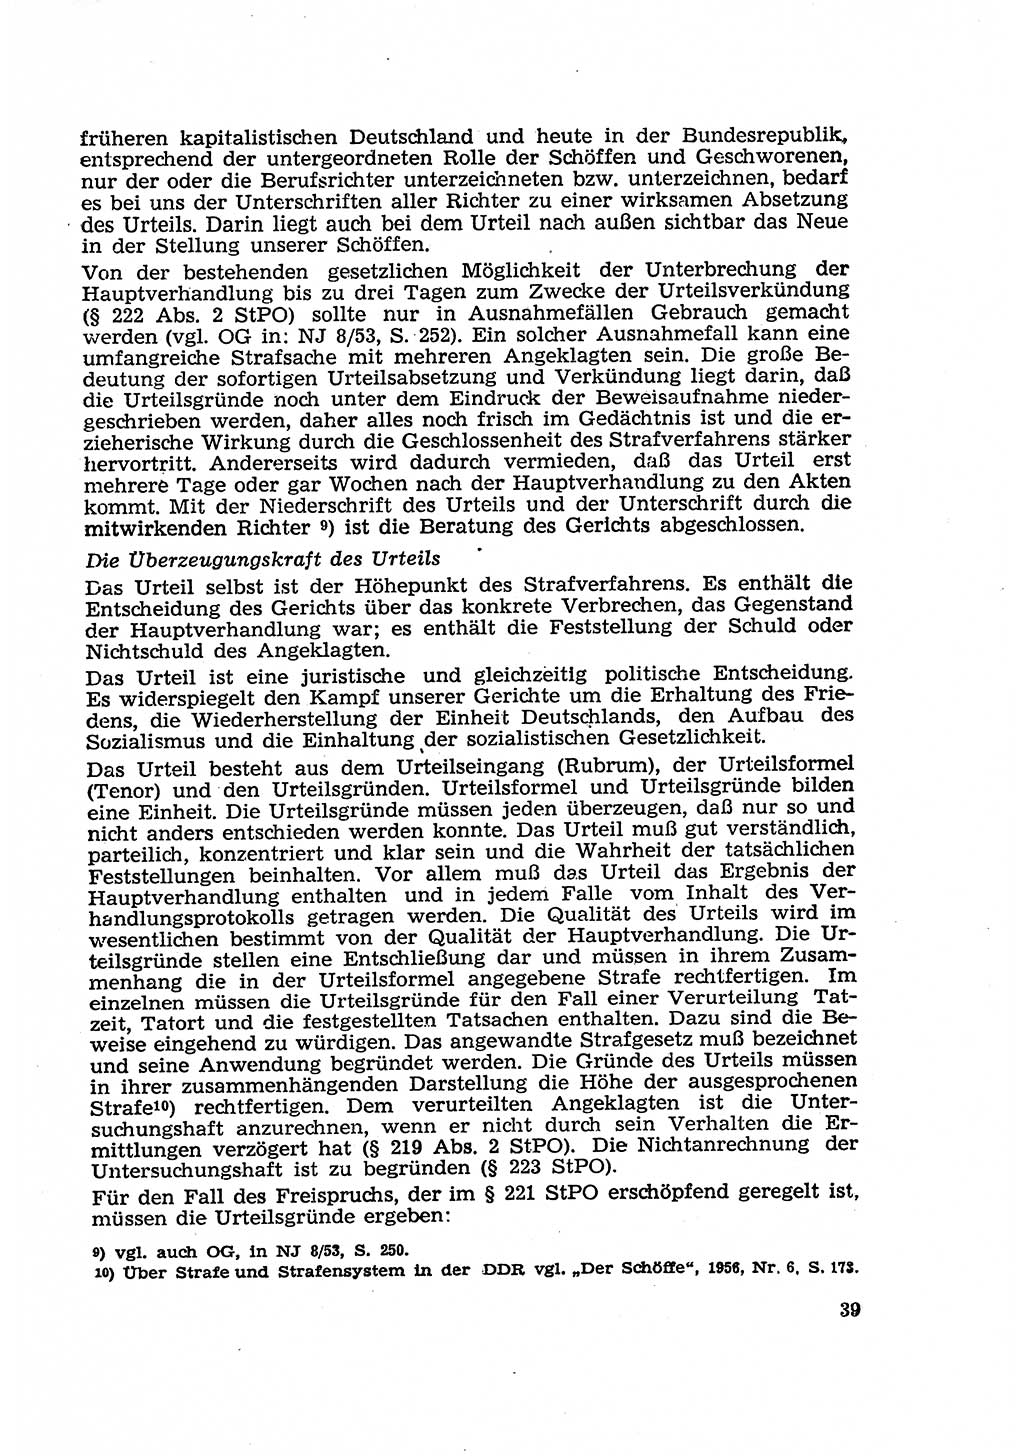 Strafverfahren in der Deutschen Demokratischen Republik (DDR) und seine demokratischen Prinzipien 1956, Seite 39 (Str.-Verf. DDR 1956, S. 39)